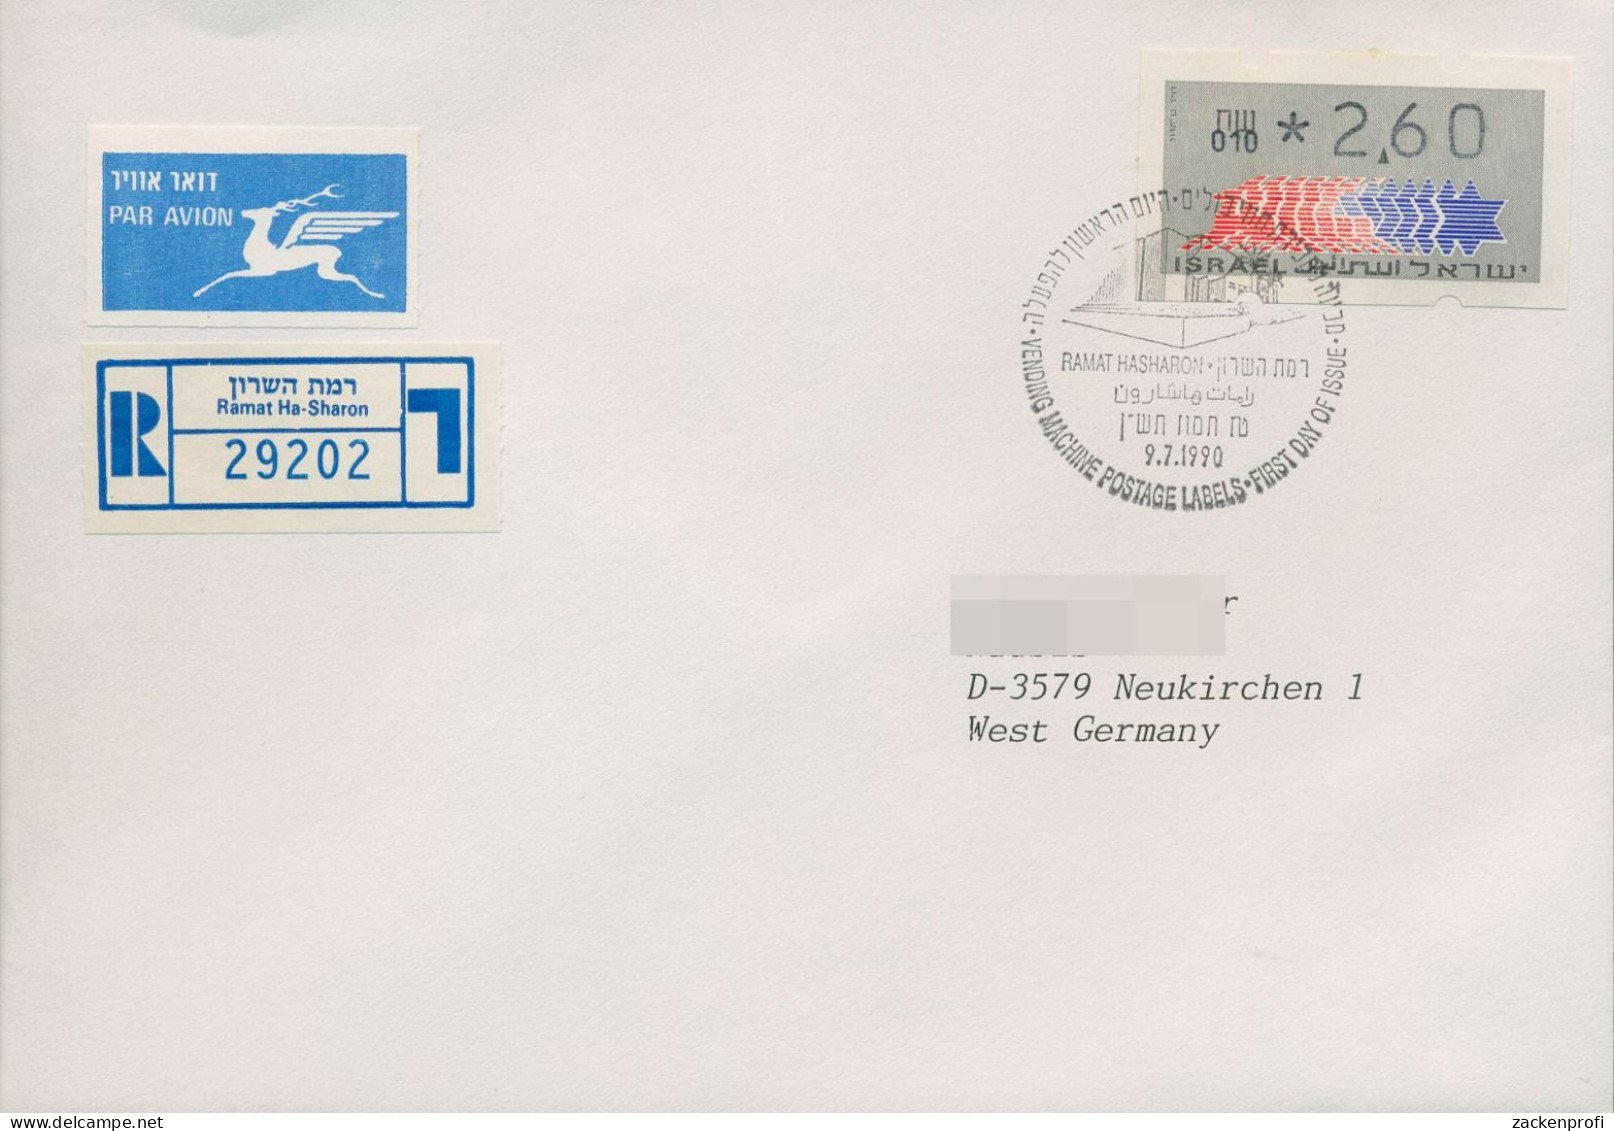 Israel ATM 1990 Hirsch 010 Luftpost R-Ersttagsbrief, ATM 3.1.10 FDC (X80405) - Frankeervignetten (Frama)